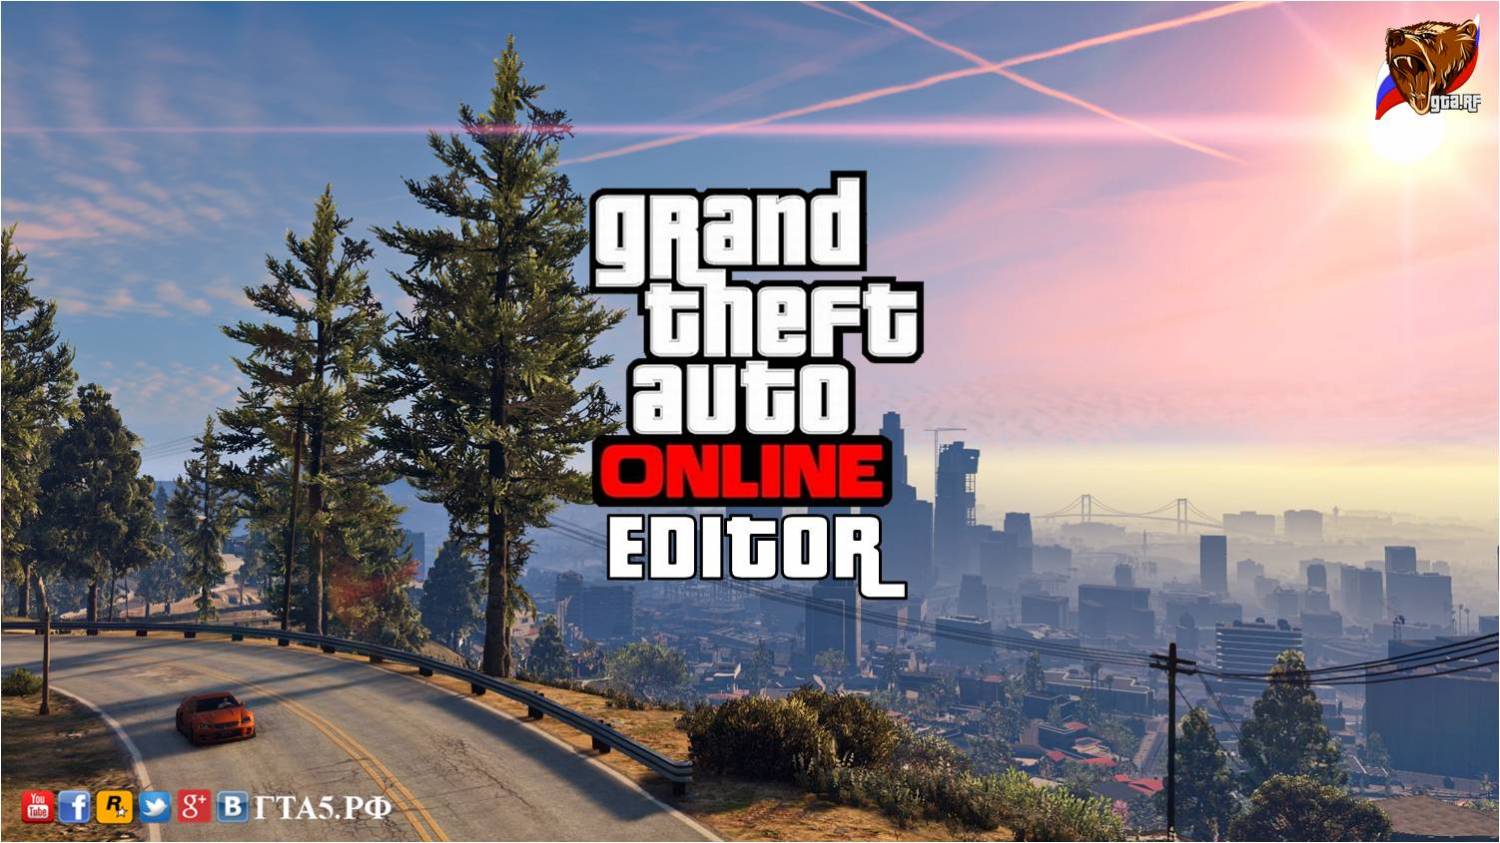 На next gen консолях нового поколения PS4 и XB1 в версии Grand Theft Auto V появится редактор заданий Rockstar Editor.